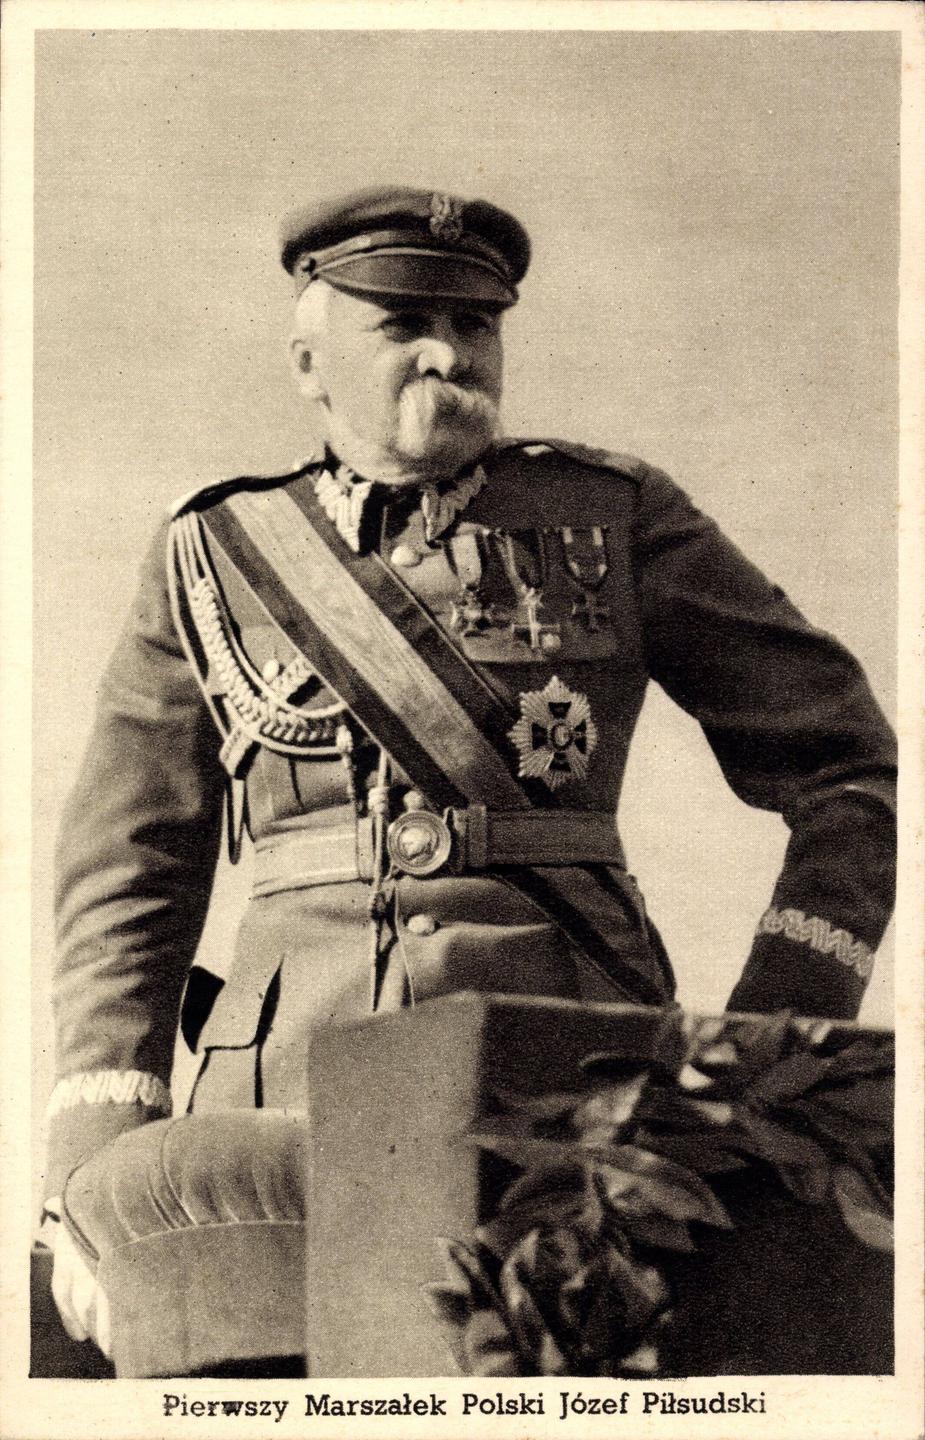 Schwarzweißfotografie von Józef Piłsudski in militärischer Montur